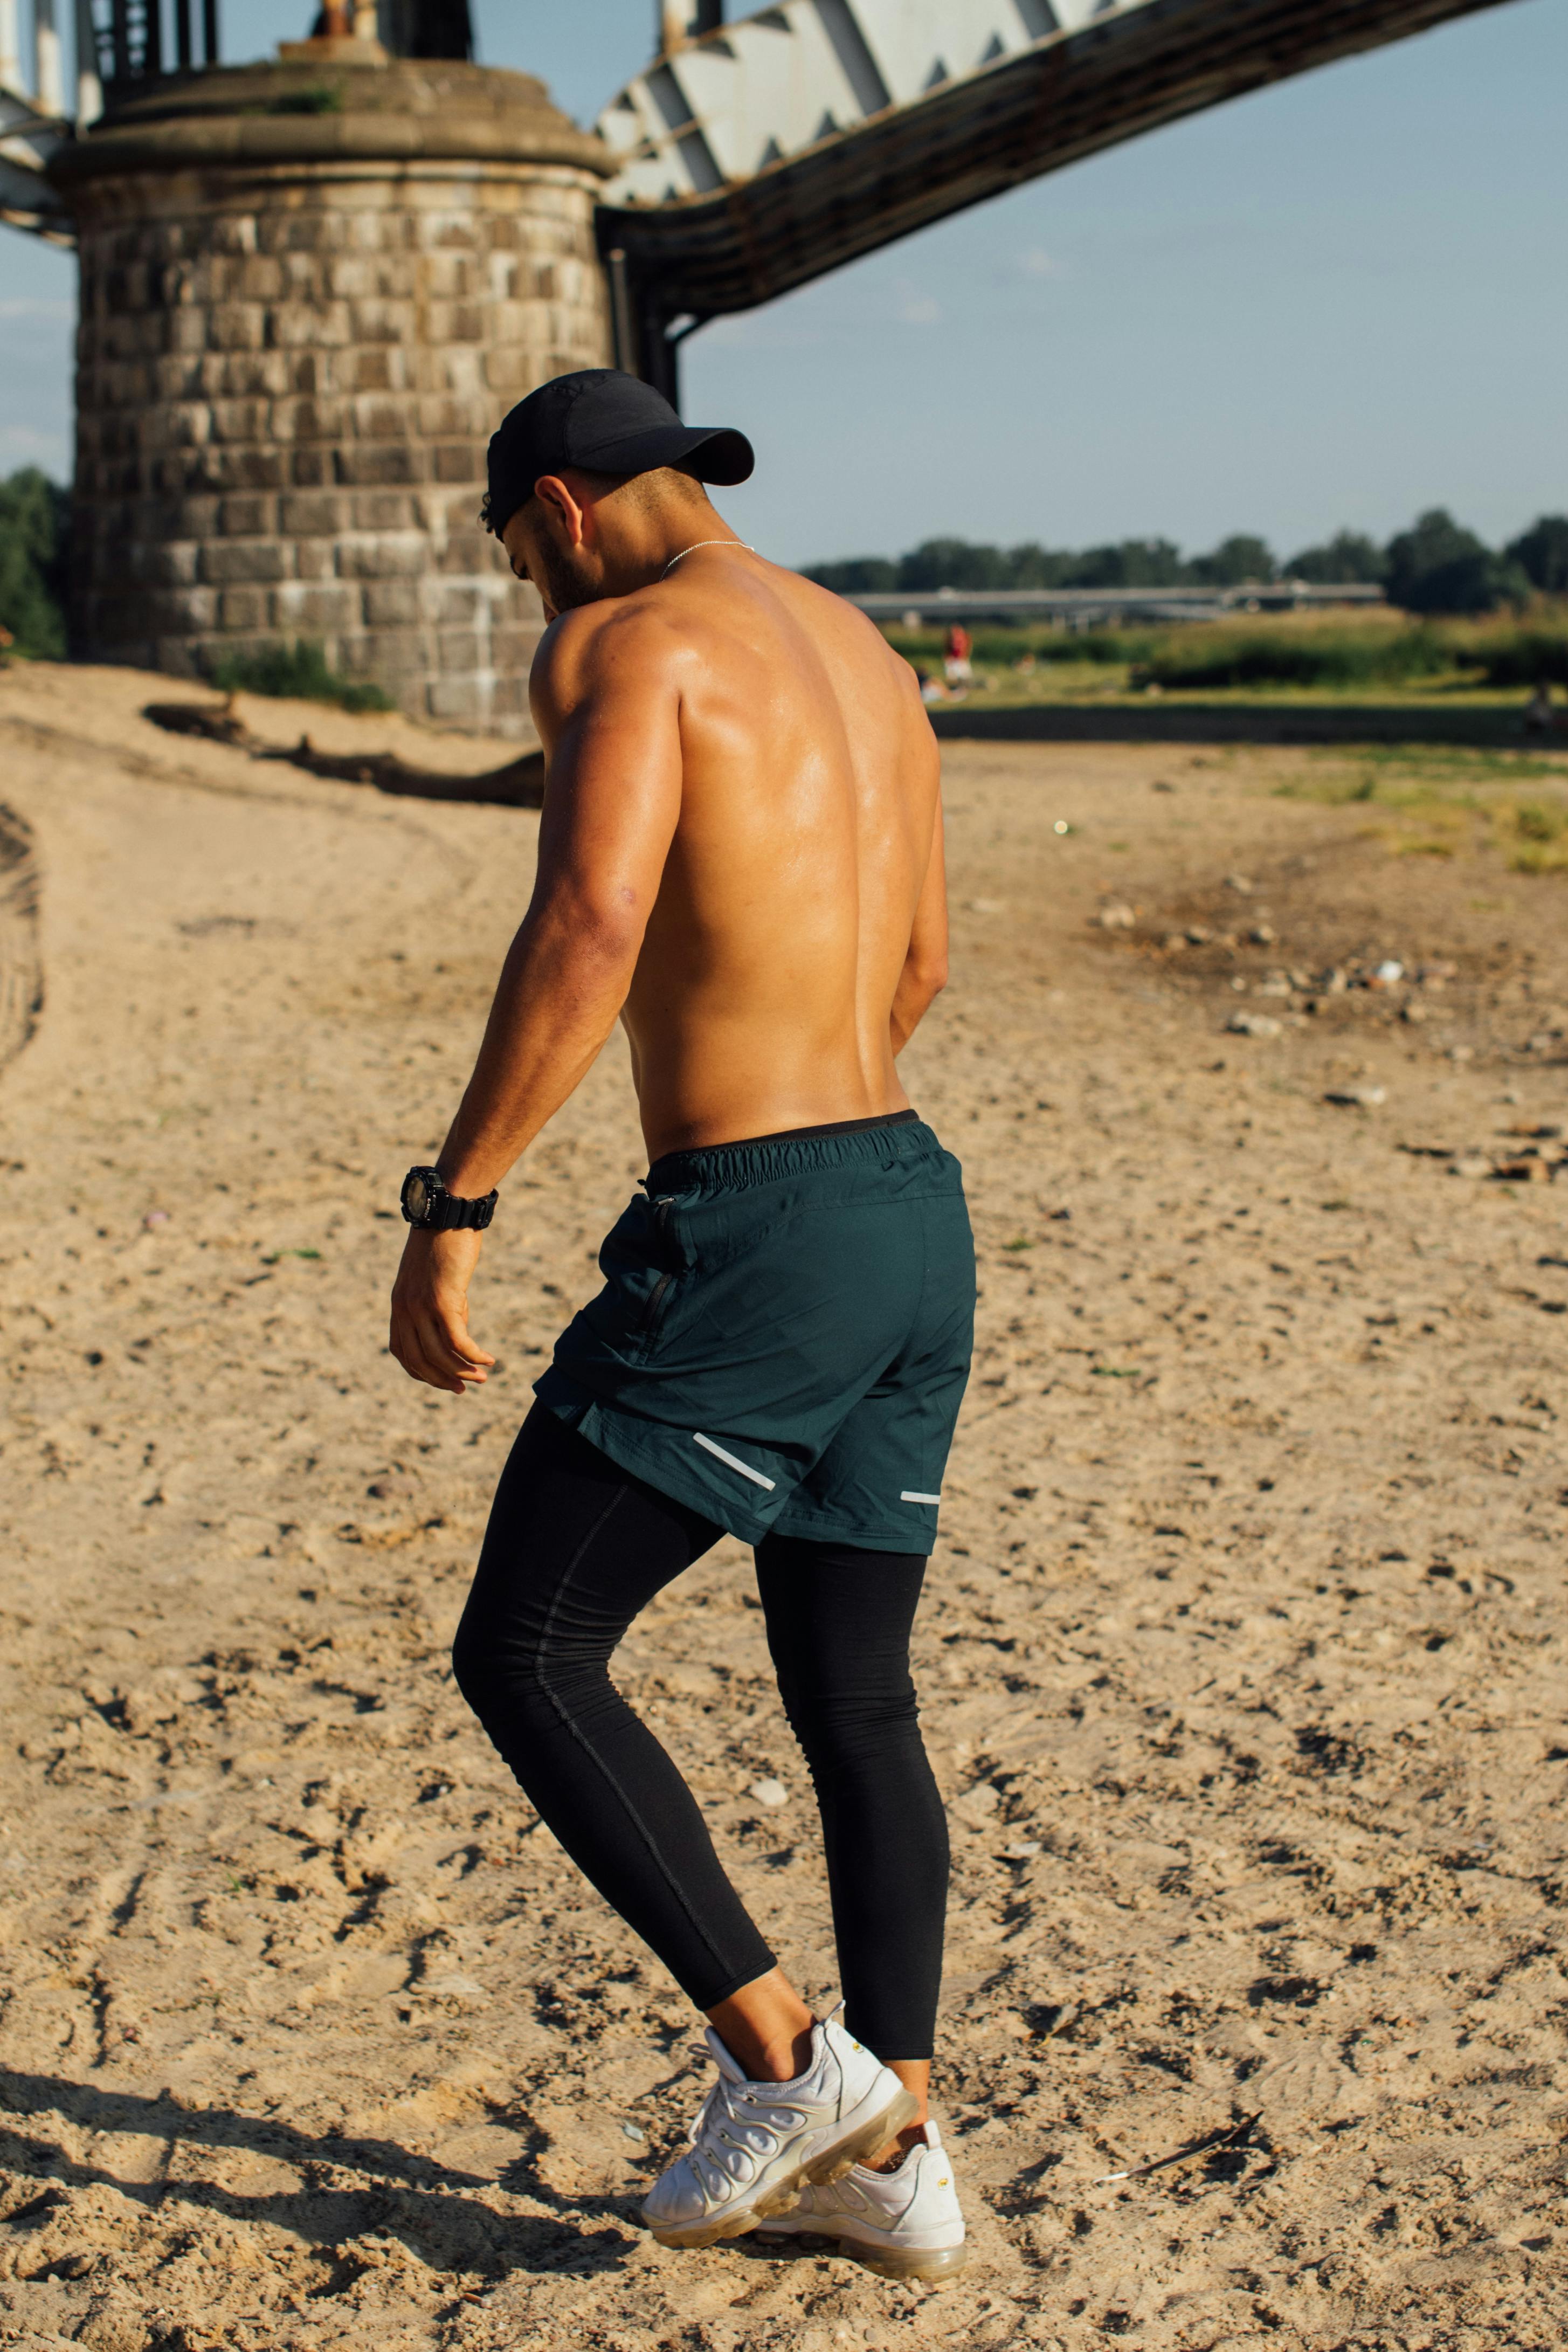 A Shirtless Man Wearing Shorts over Black Leggings · Free Stock Photo